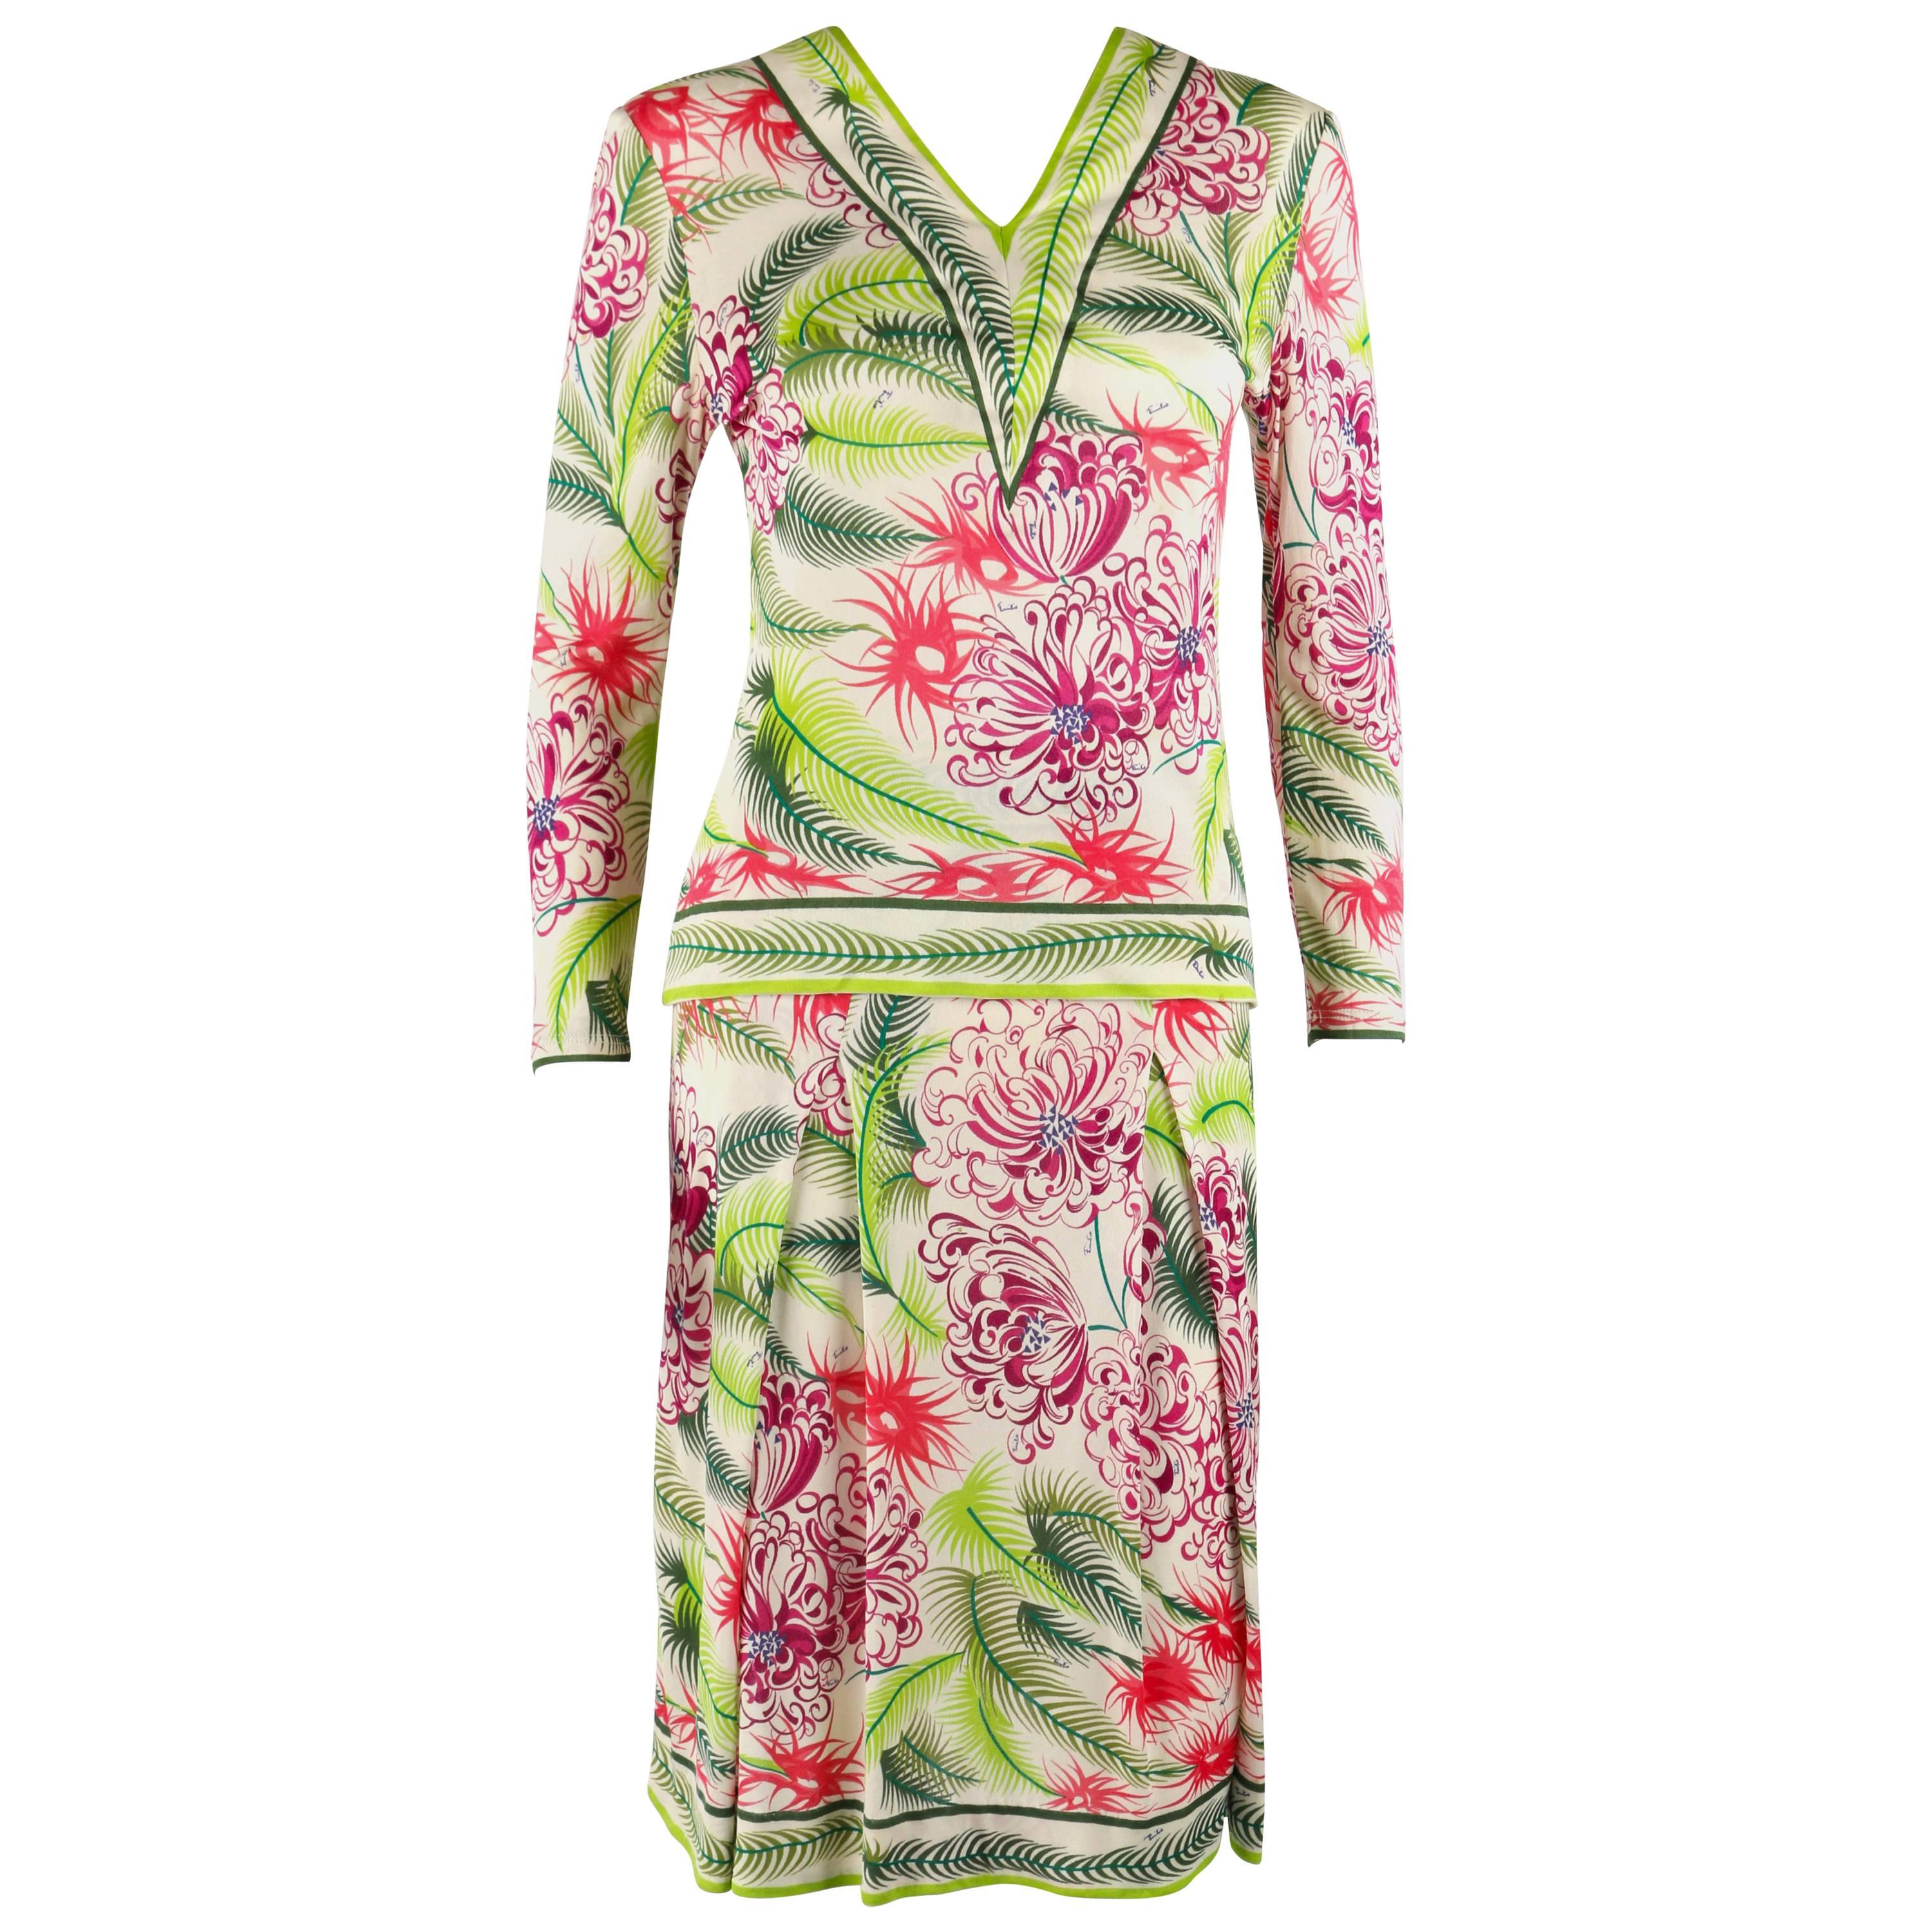 EMILIO PUCCI 1960s 2pc Multicolor Floral Fern Silk Blouse Skirt Dress Set Size 1